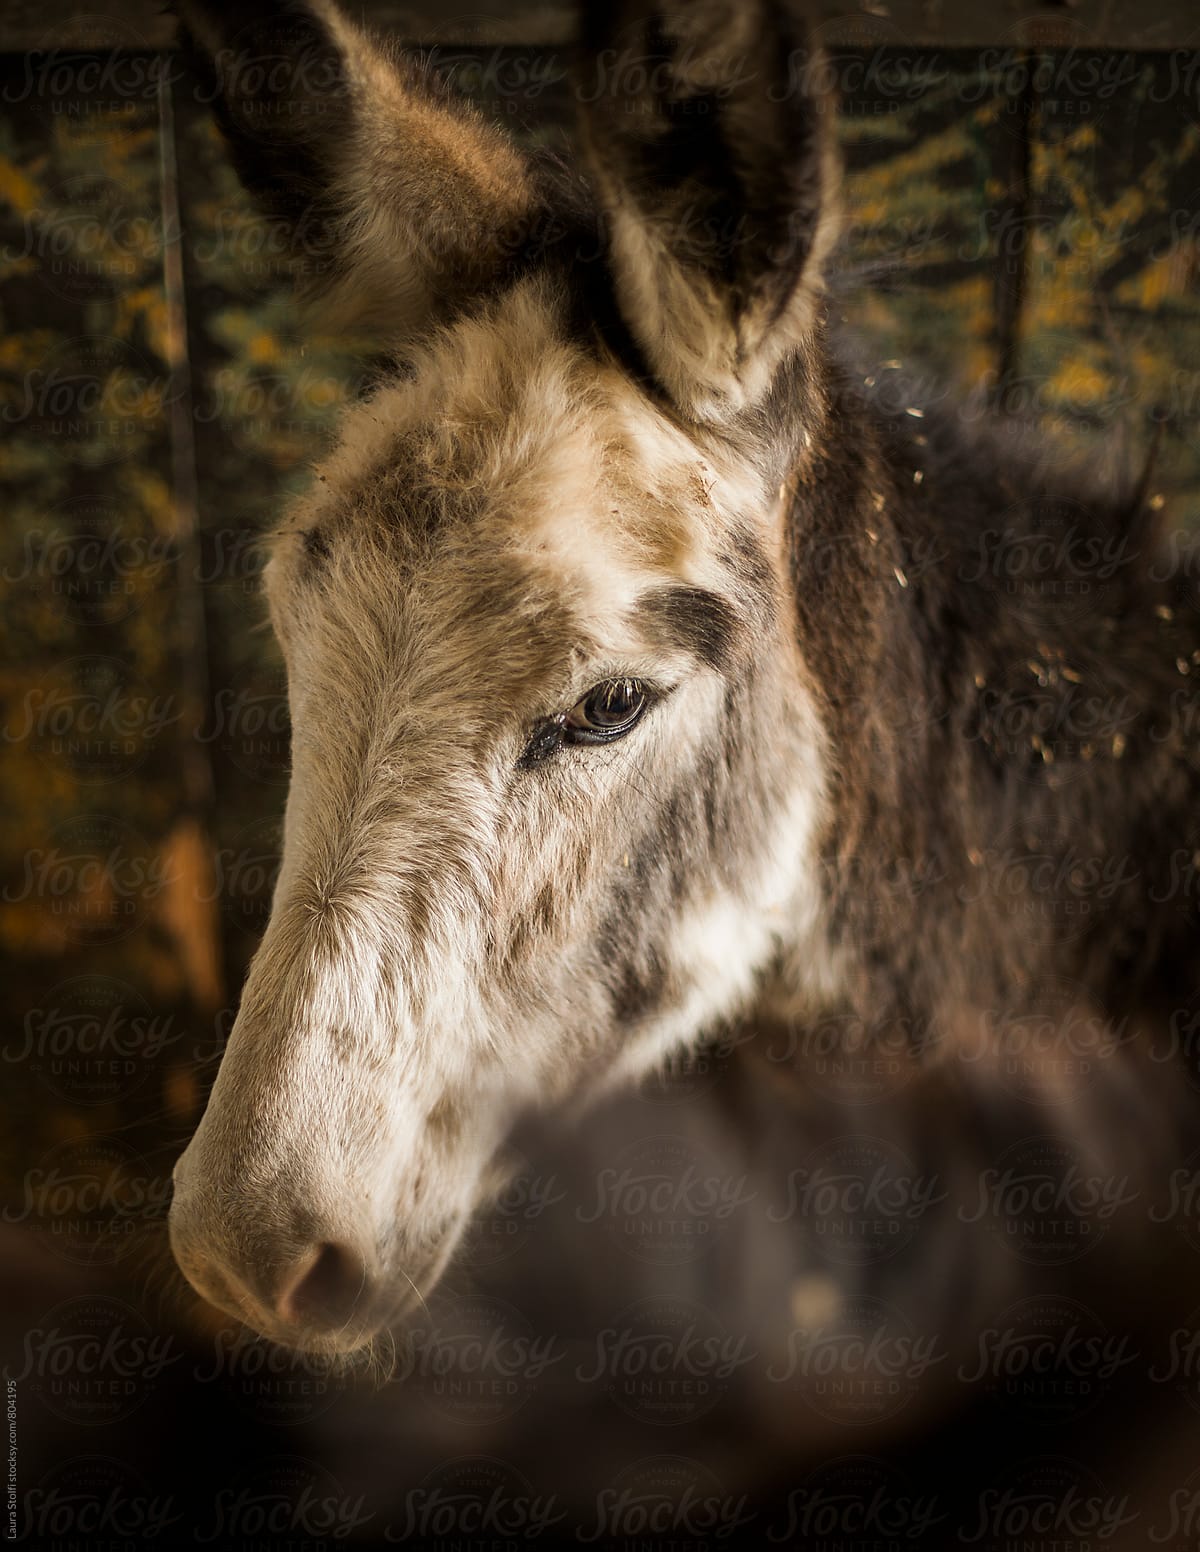 Close up of donkey muzzle